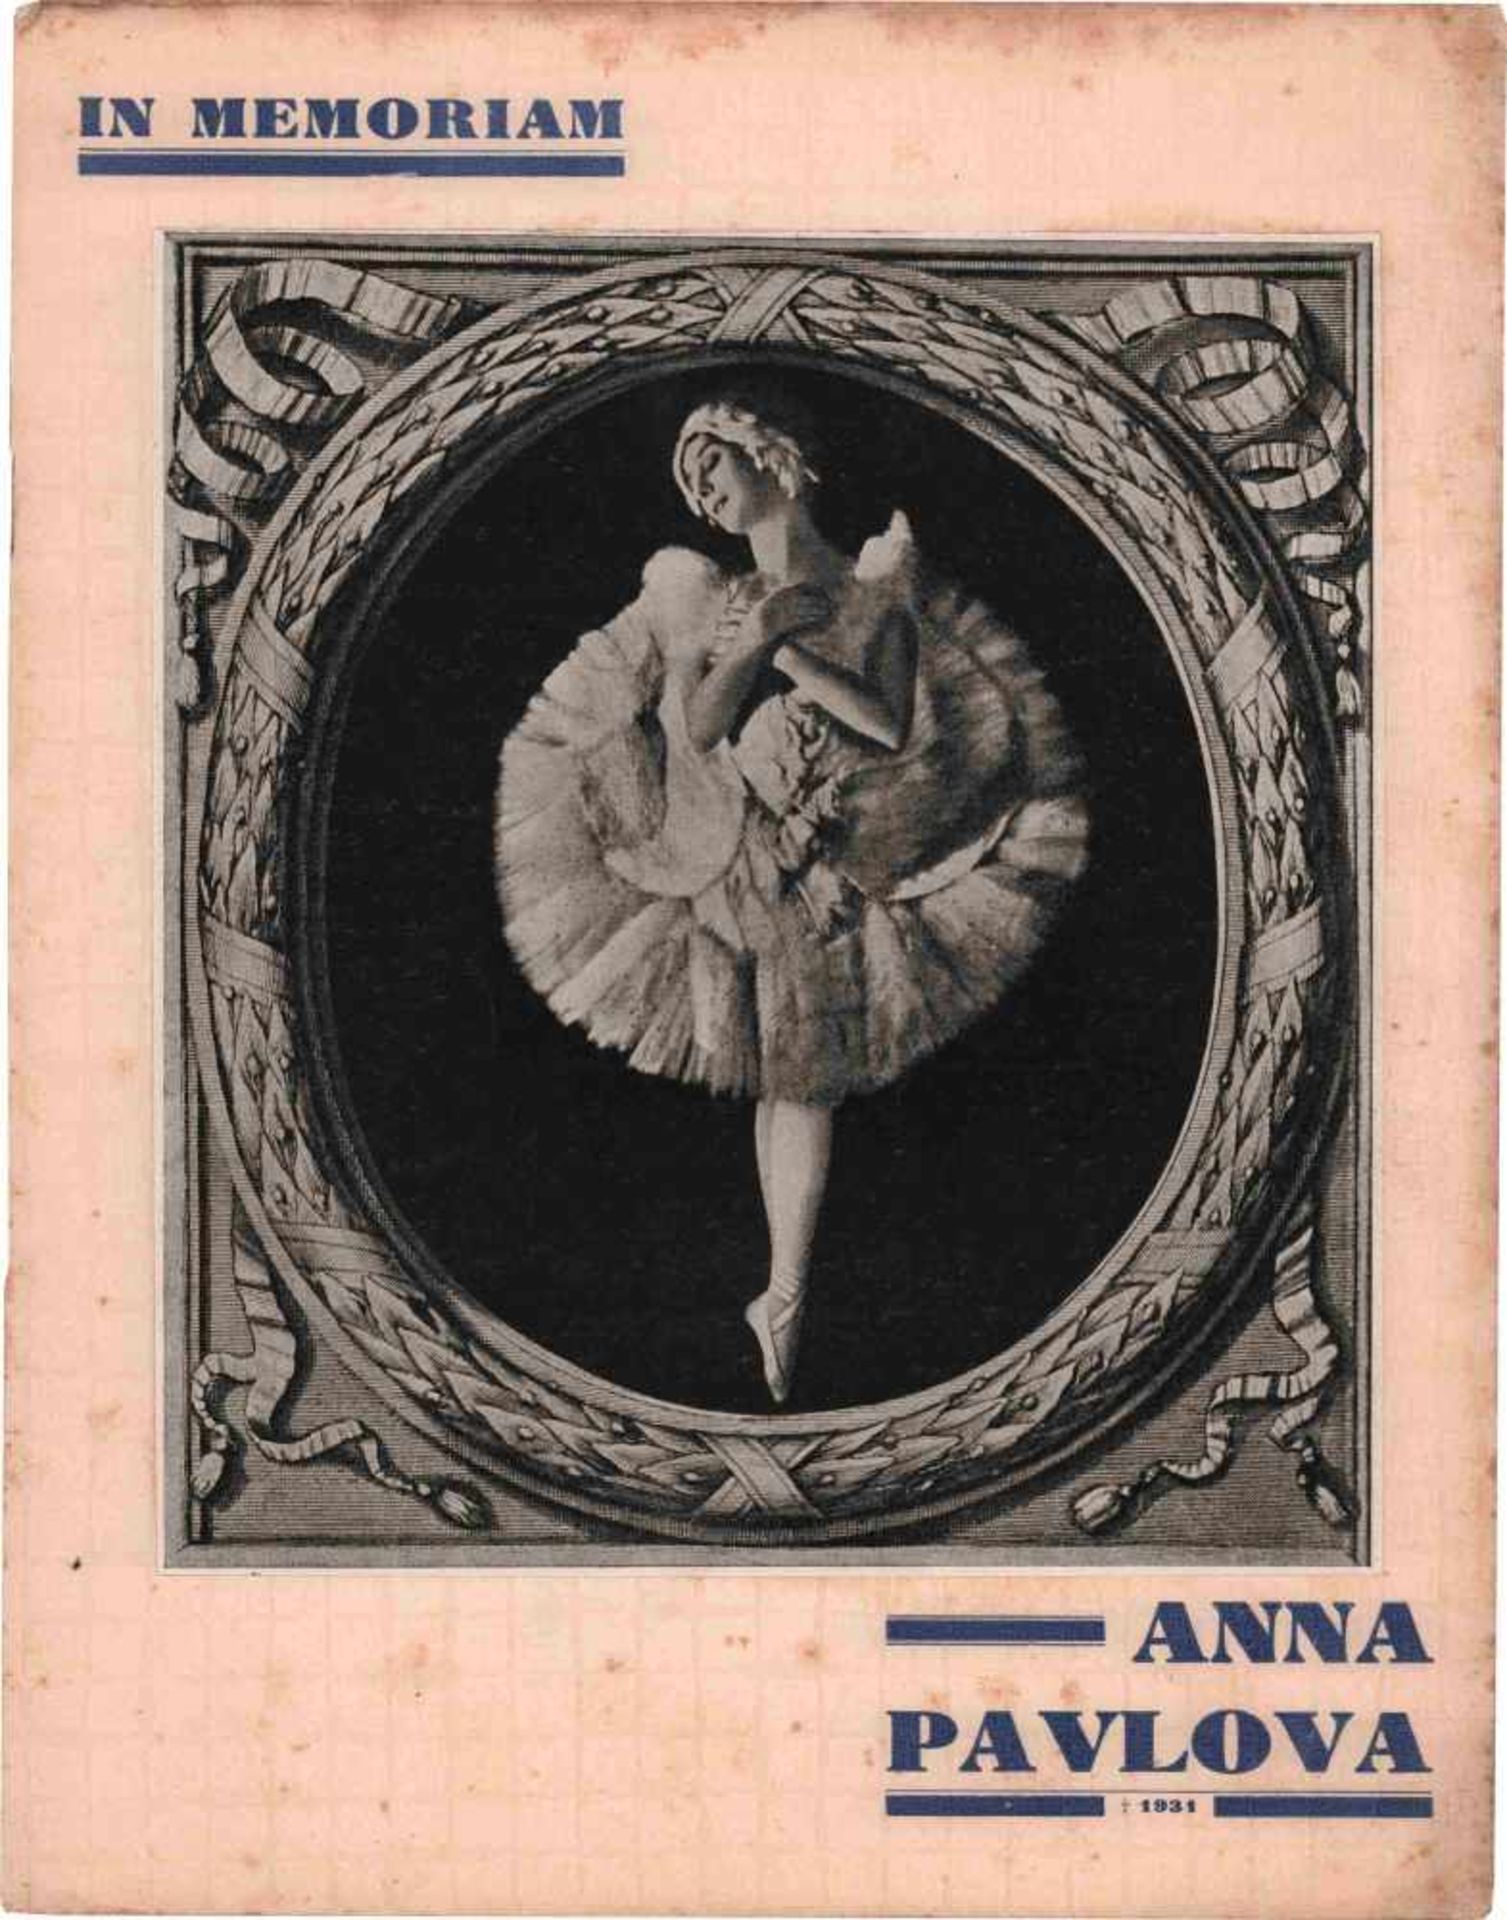 [BALLETS RUSSES, ANNA PAVLOWA] Lot aus 7 Ausgaben, gewidmet Anna Pawlowa, u.a. Zeitschrift Le Soir - Bild 3 aus 9